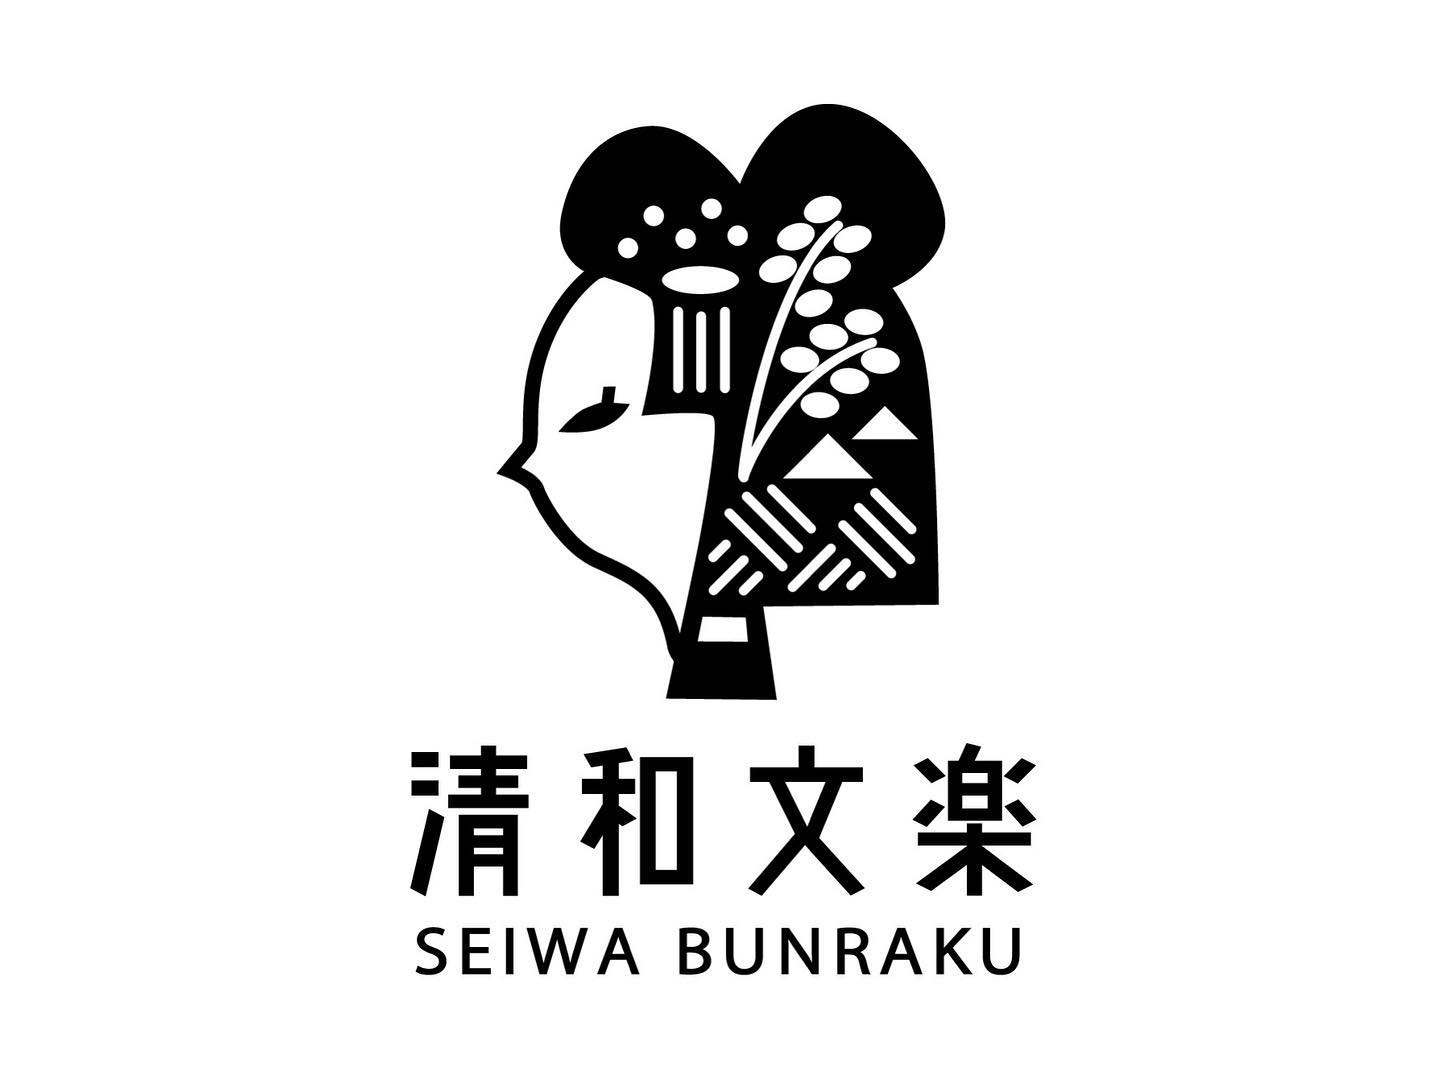 Seiwa Bunraku